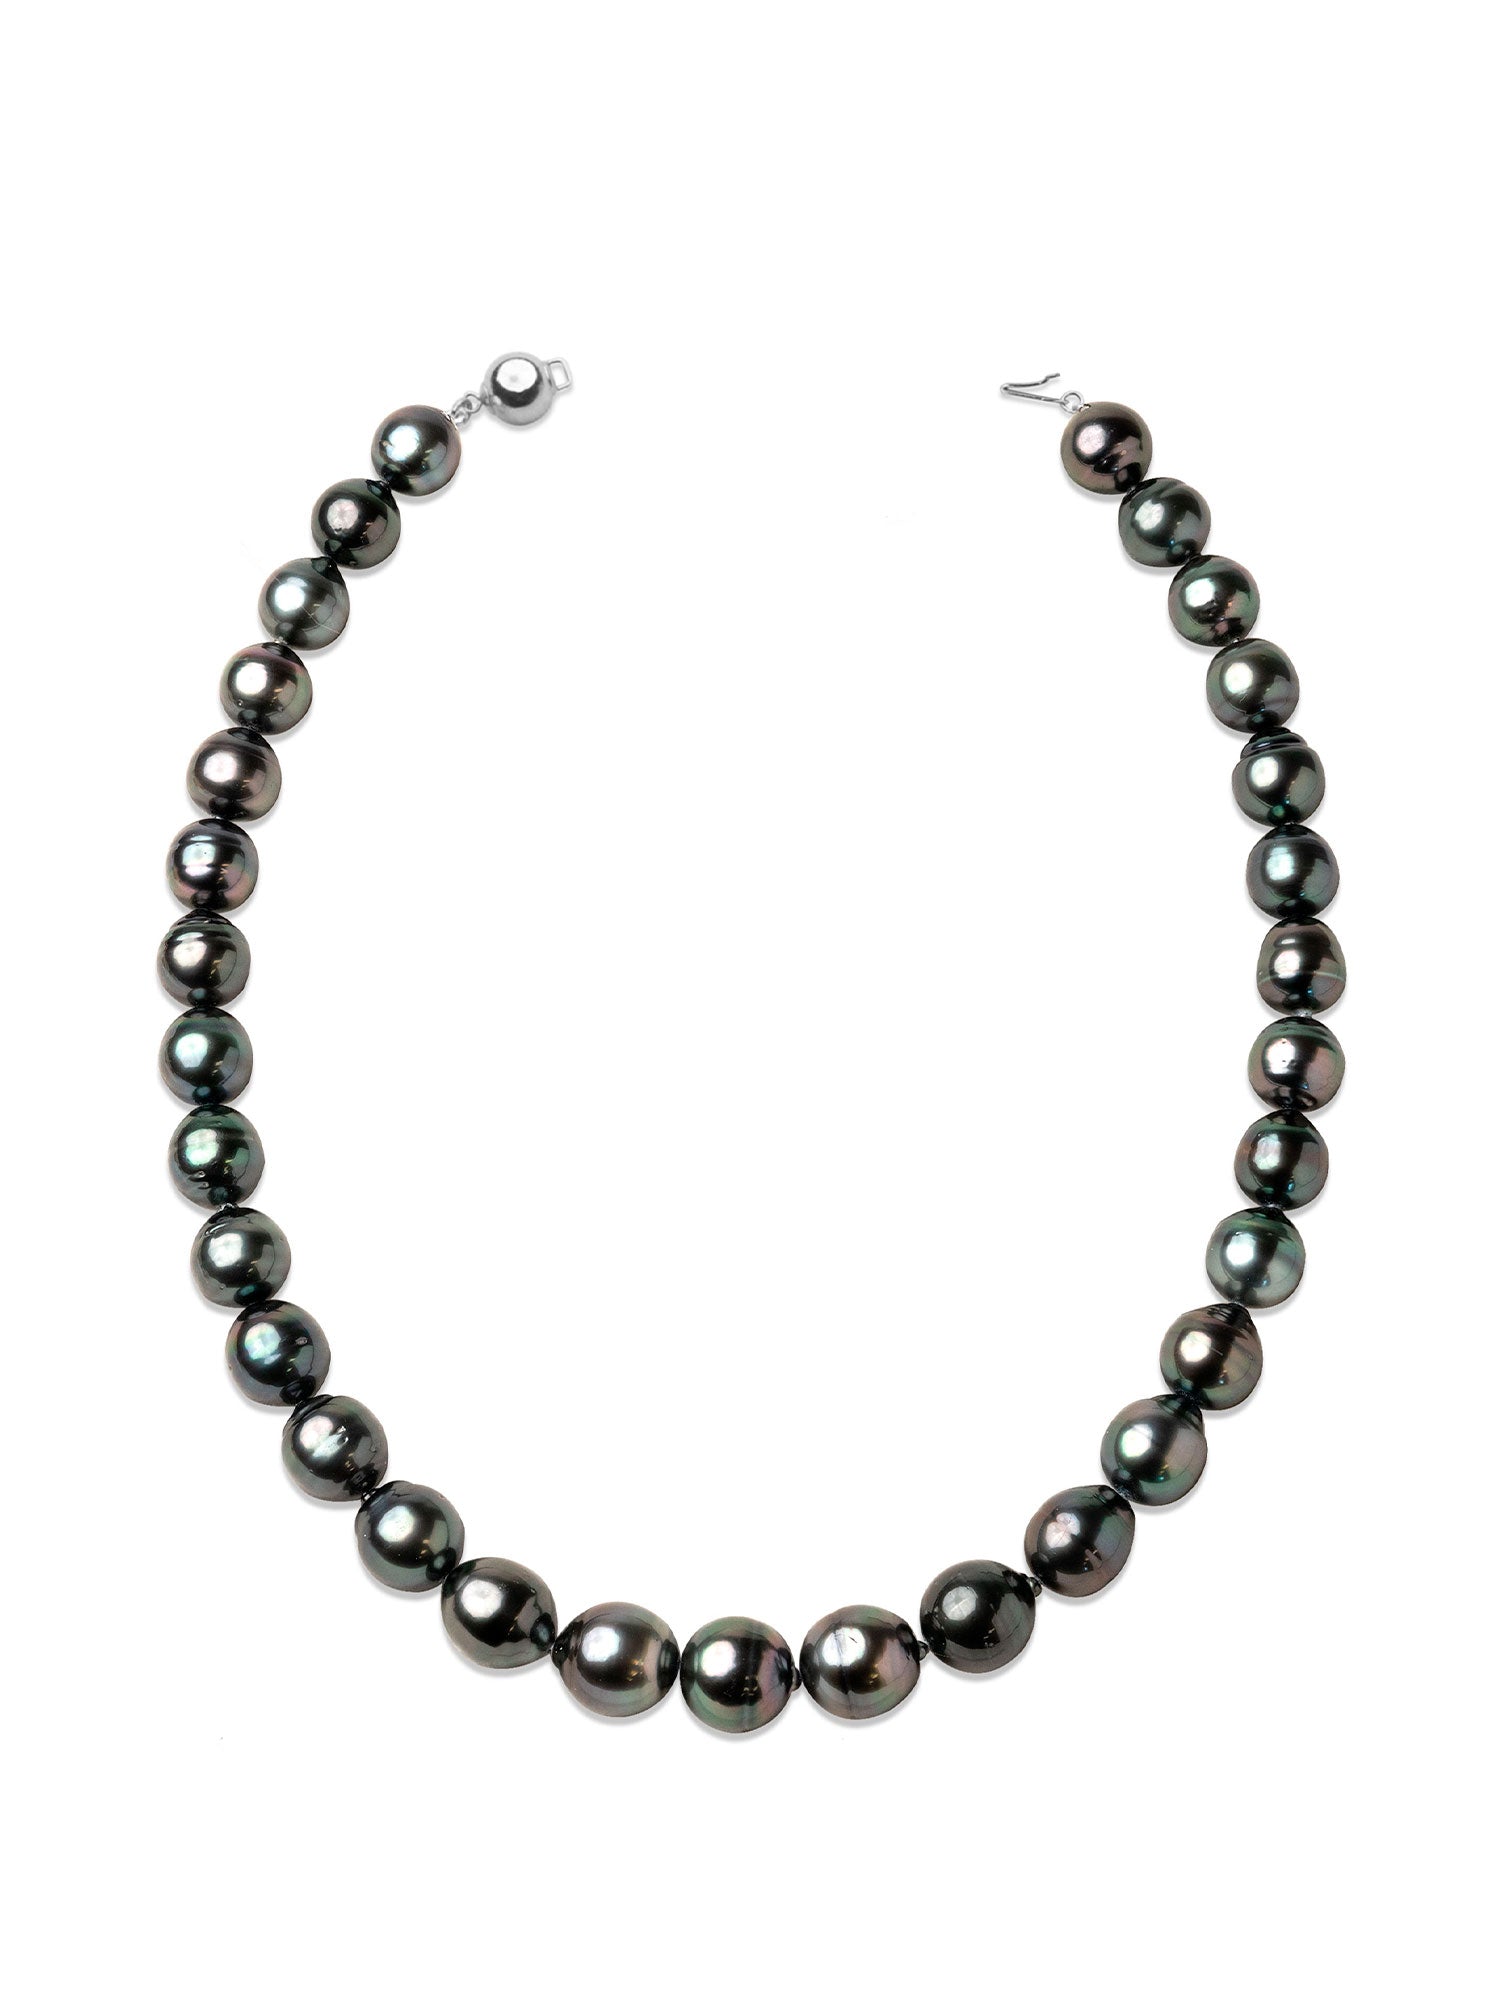 Collar de perlas cultivadas Tahití negras barrocas de 12-13 mm